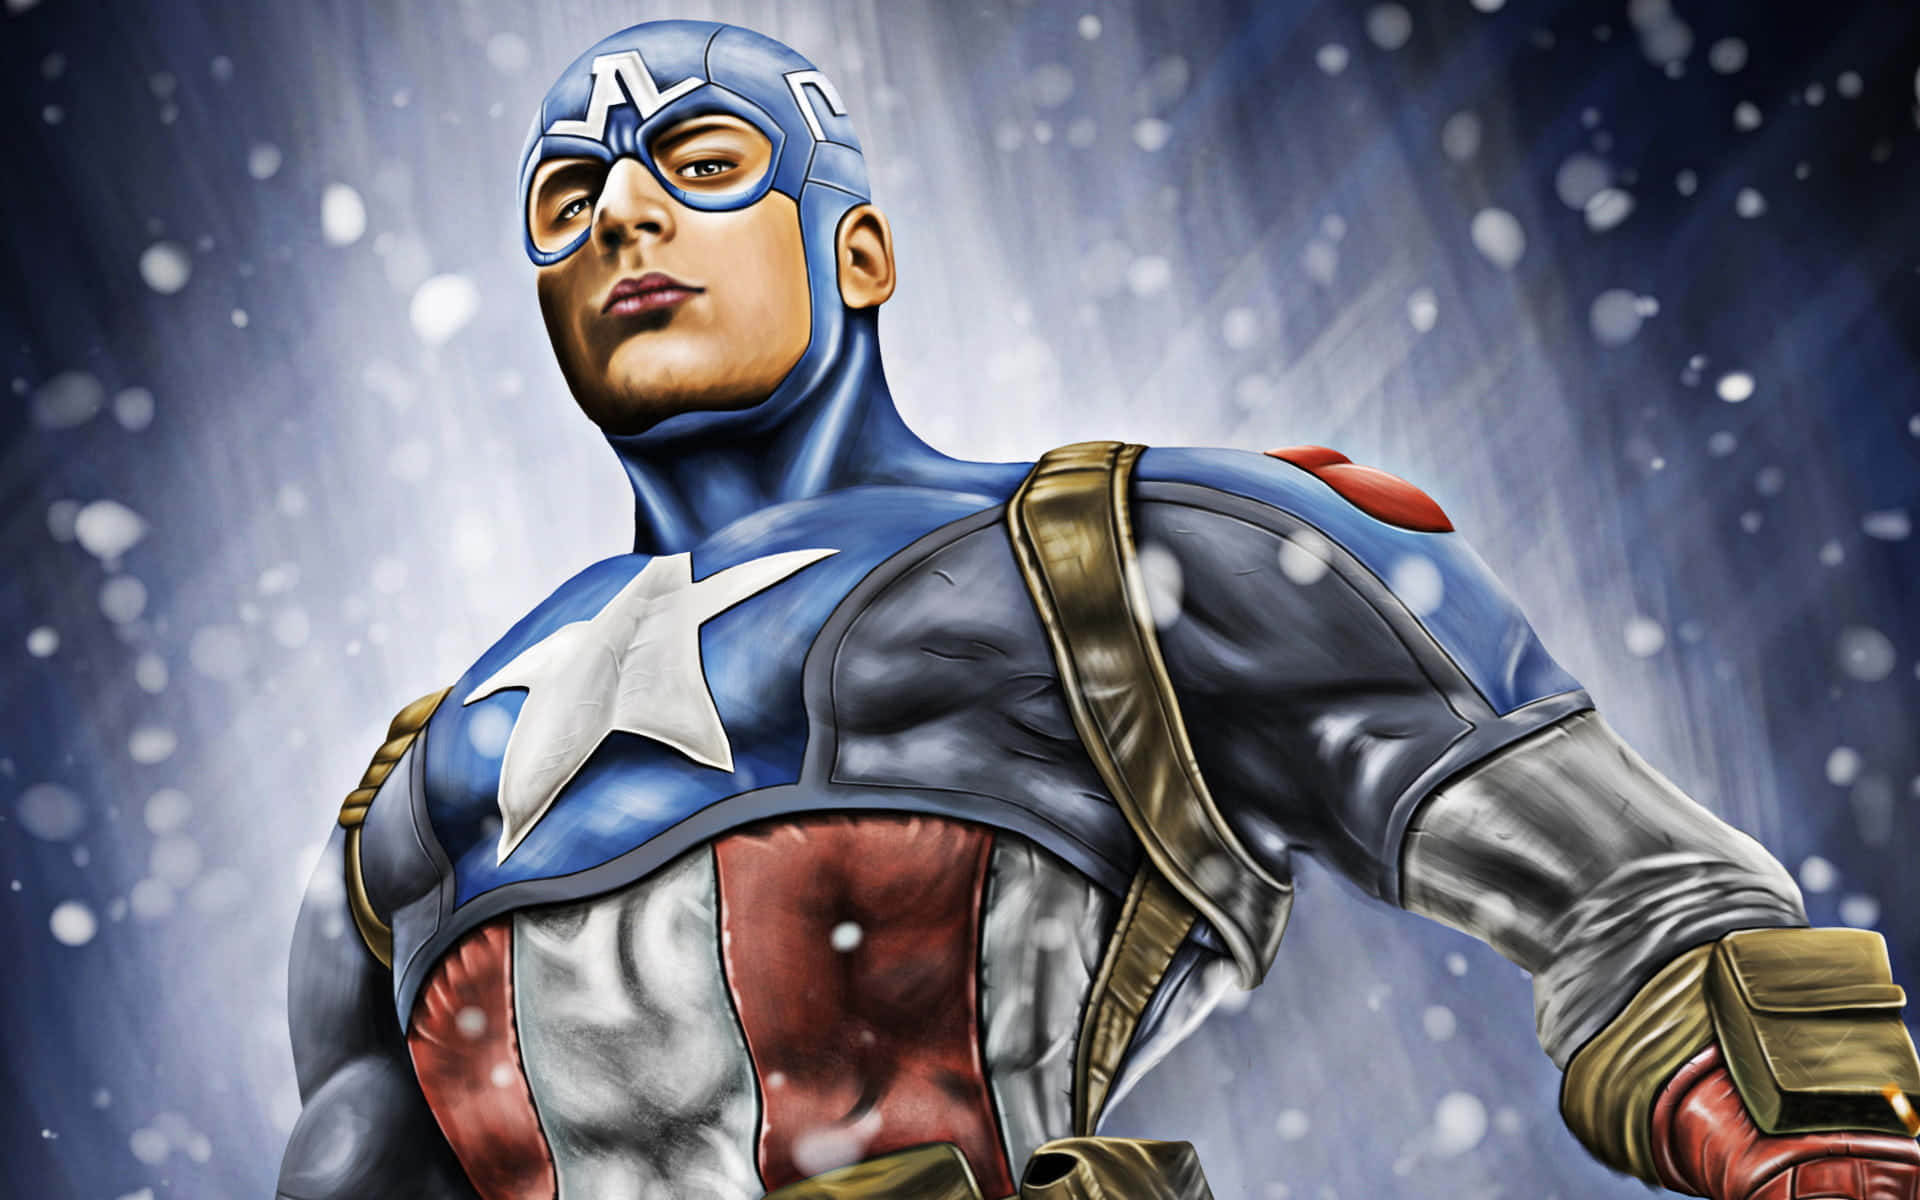 Retro Captain America Wallpaper